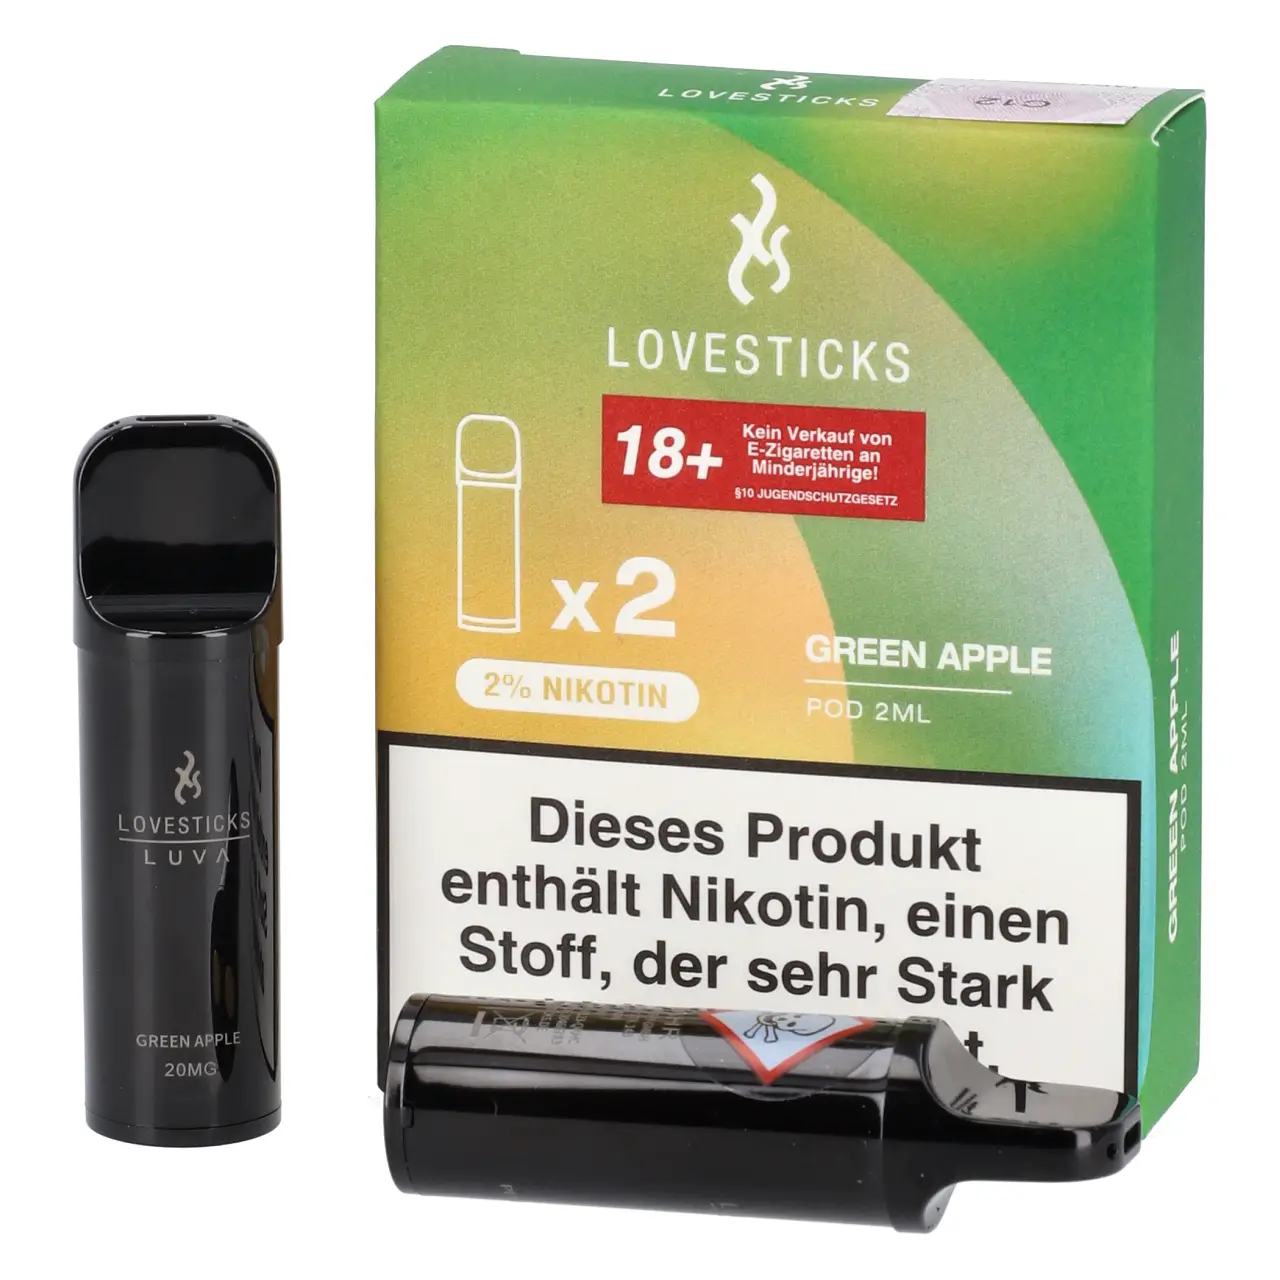 Green Apple - Lovesticks Luva Prefilled Pod - 2er Packung